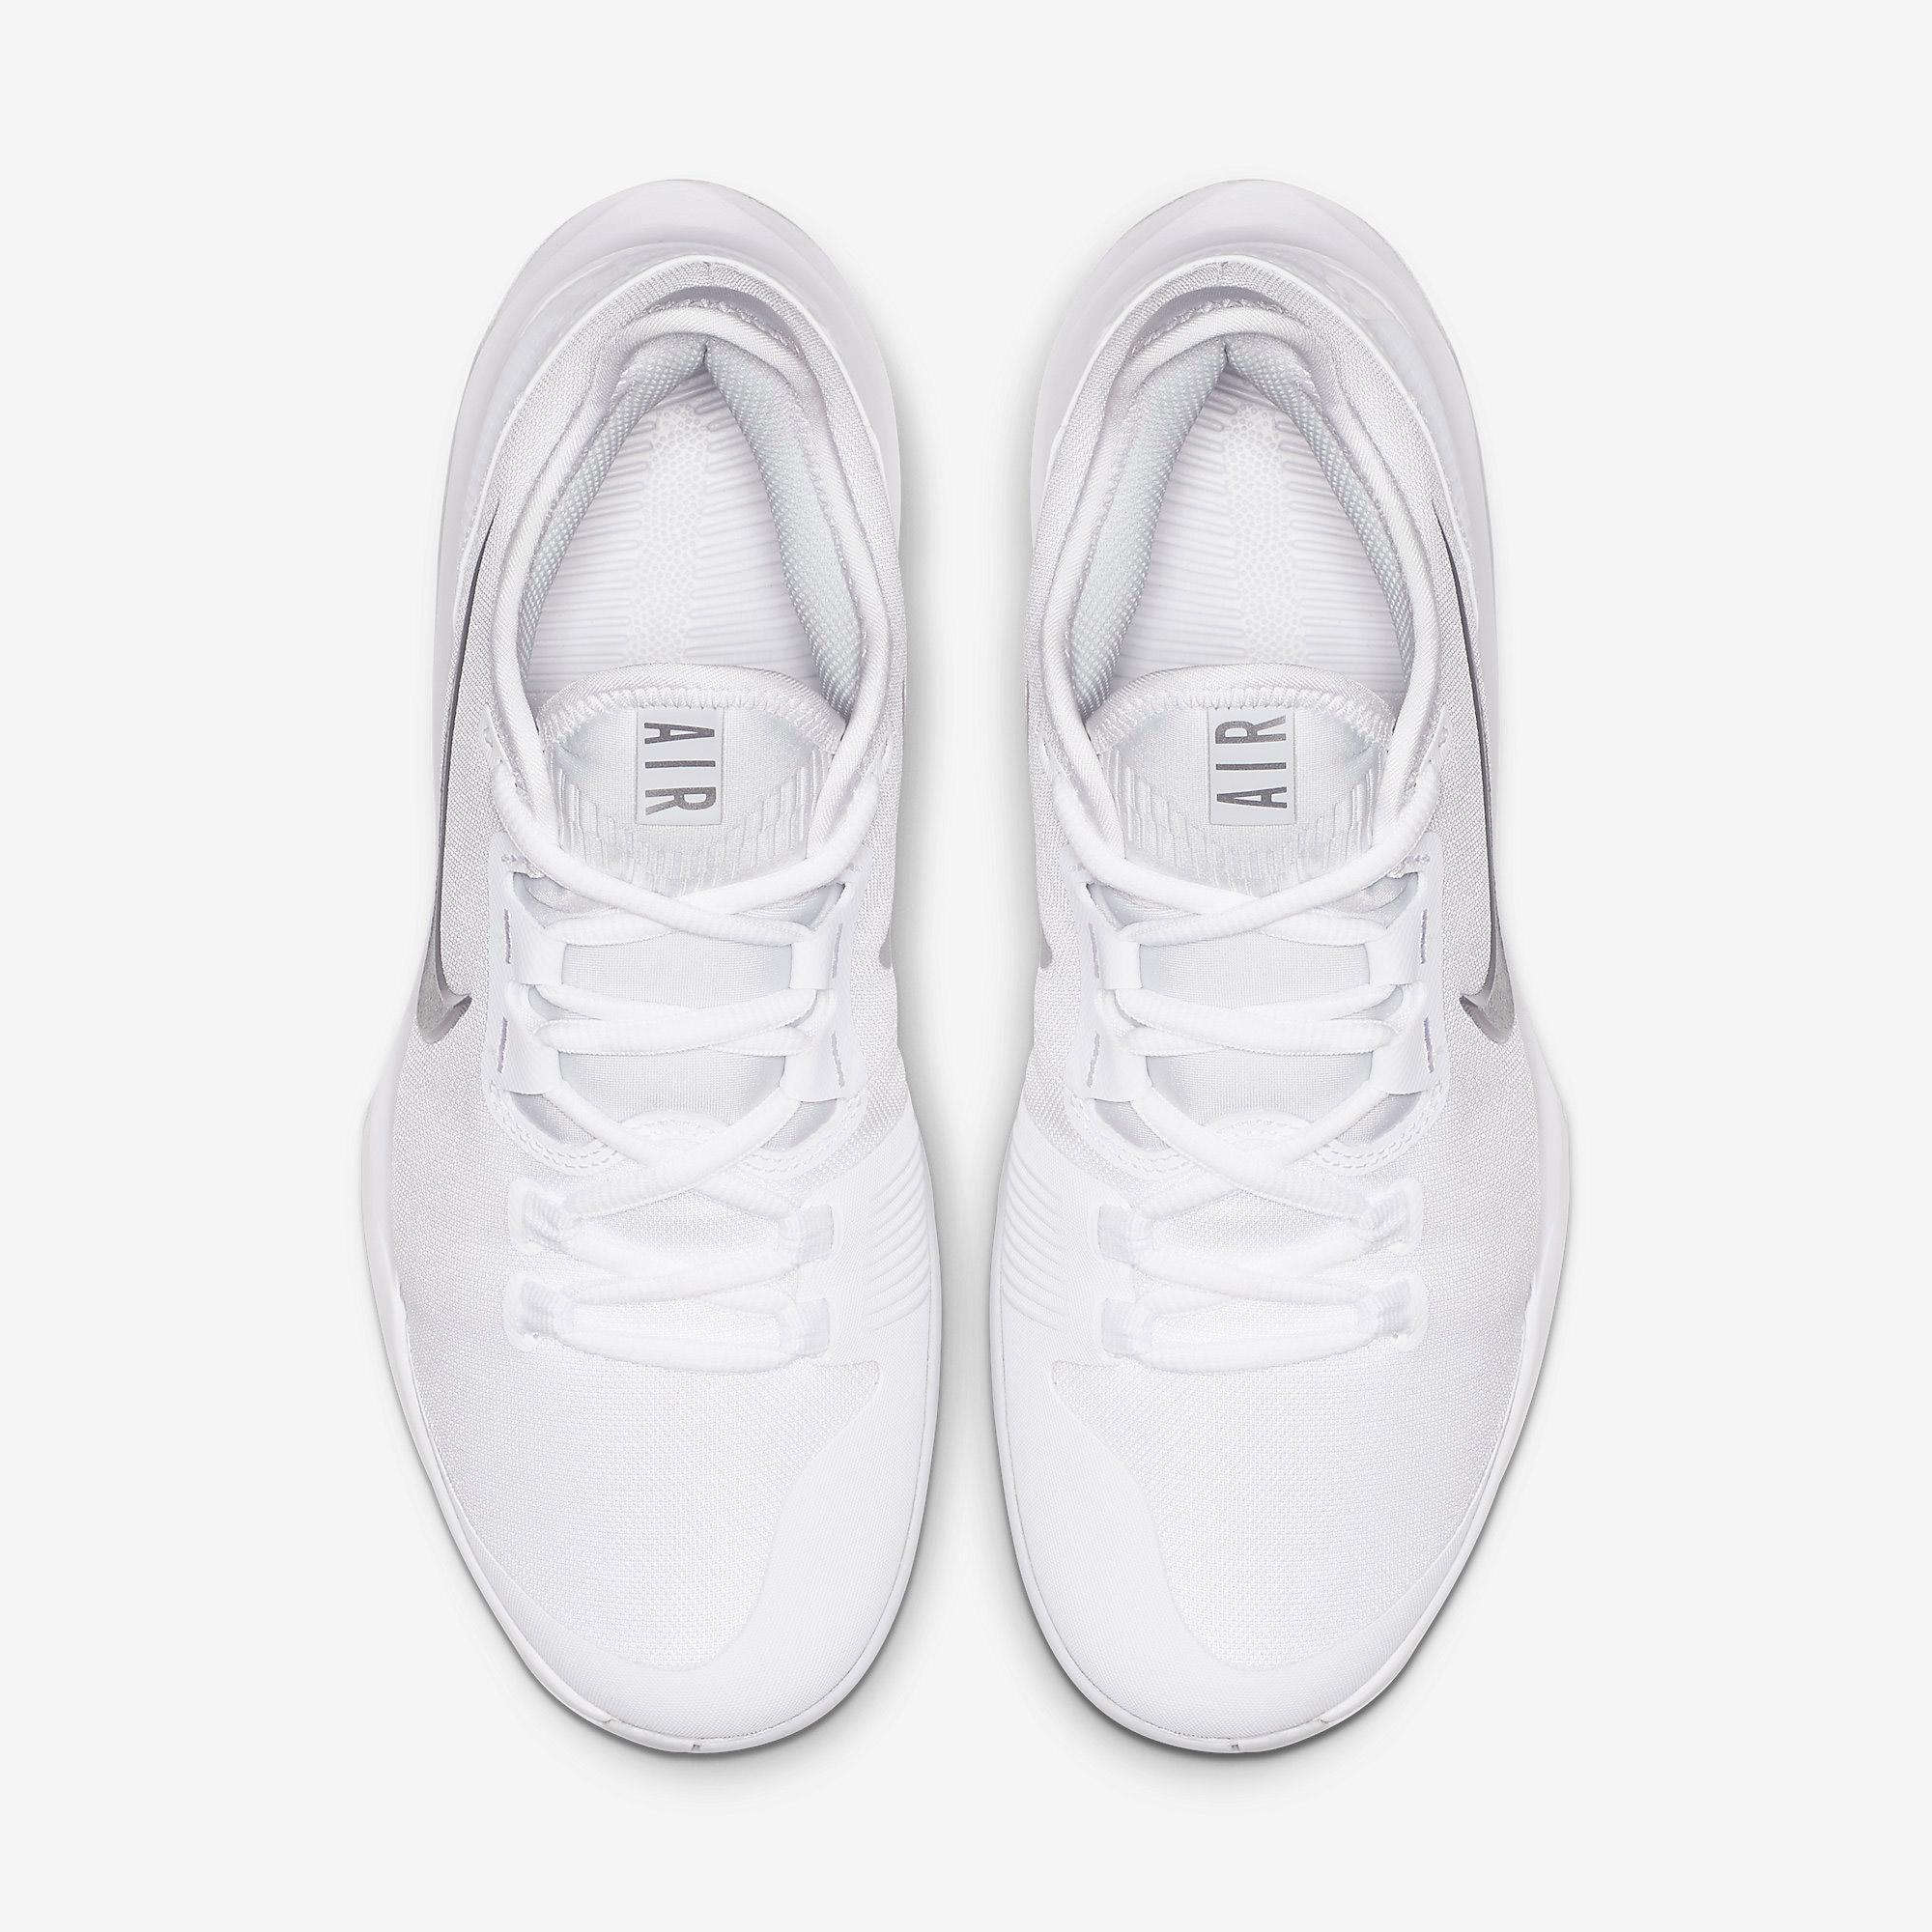 Nike Womens Air Max Wildcard Tennis Shoes - White - Tennisnuts.com